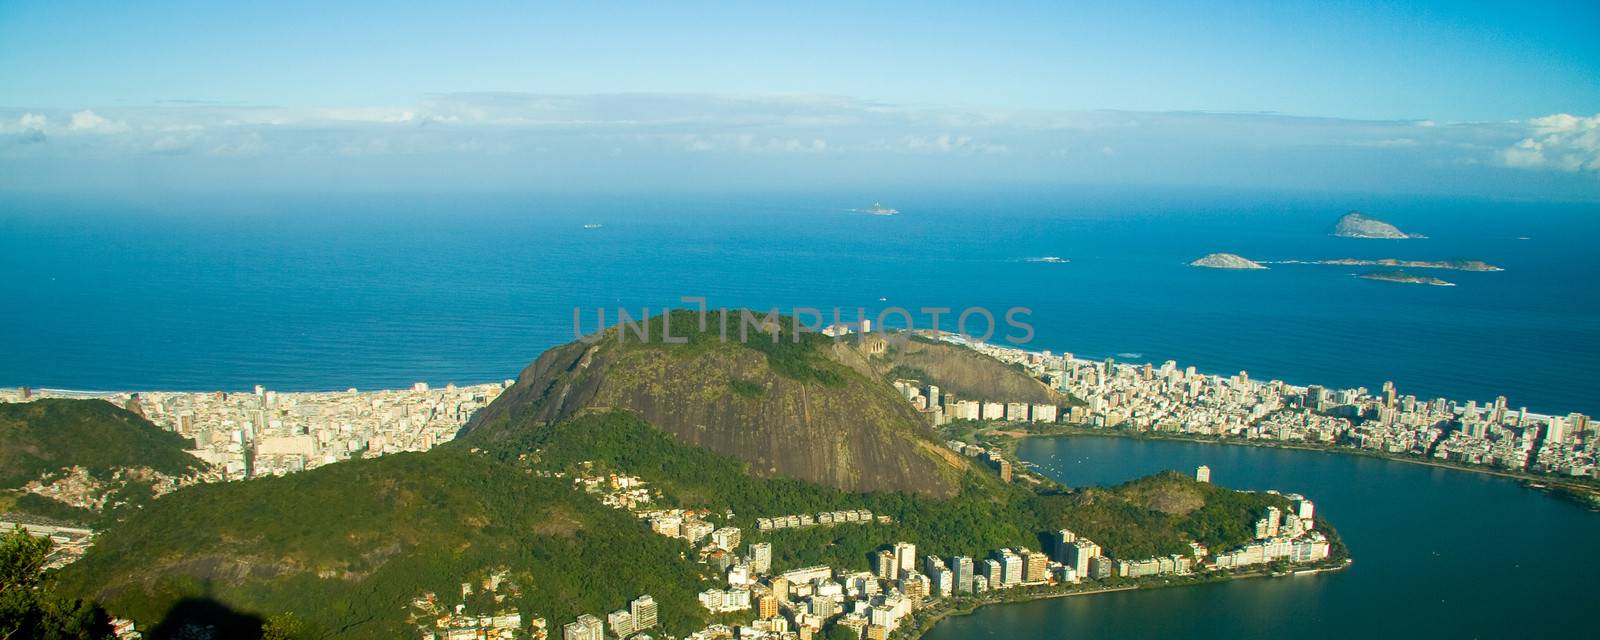 Rio de Janeiro by CelsoDiniz